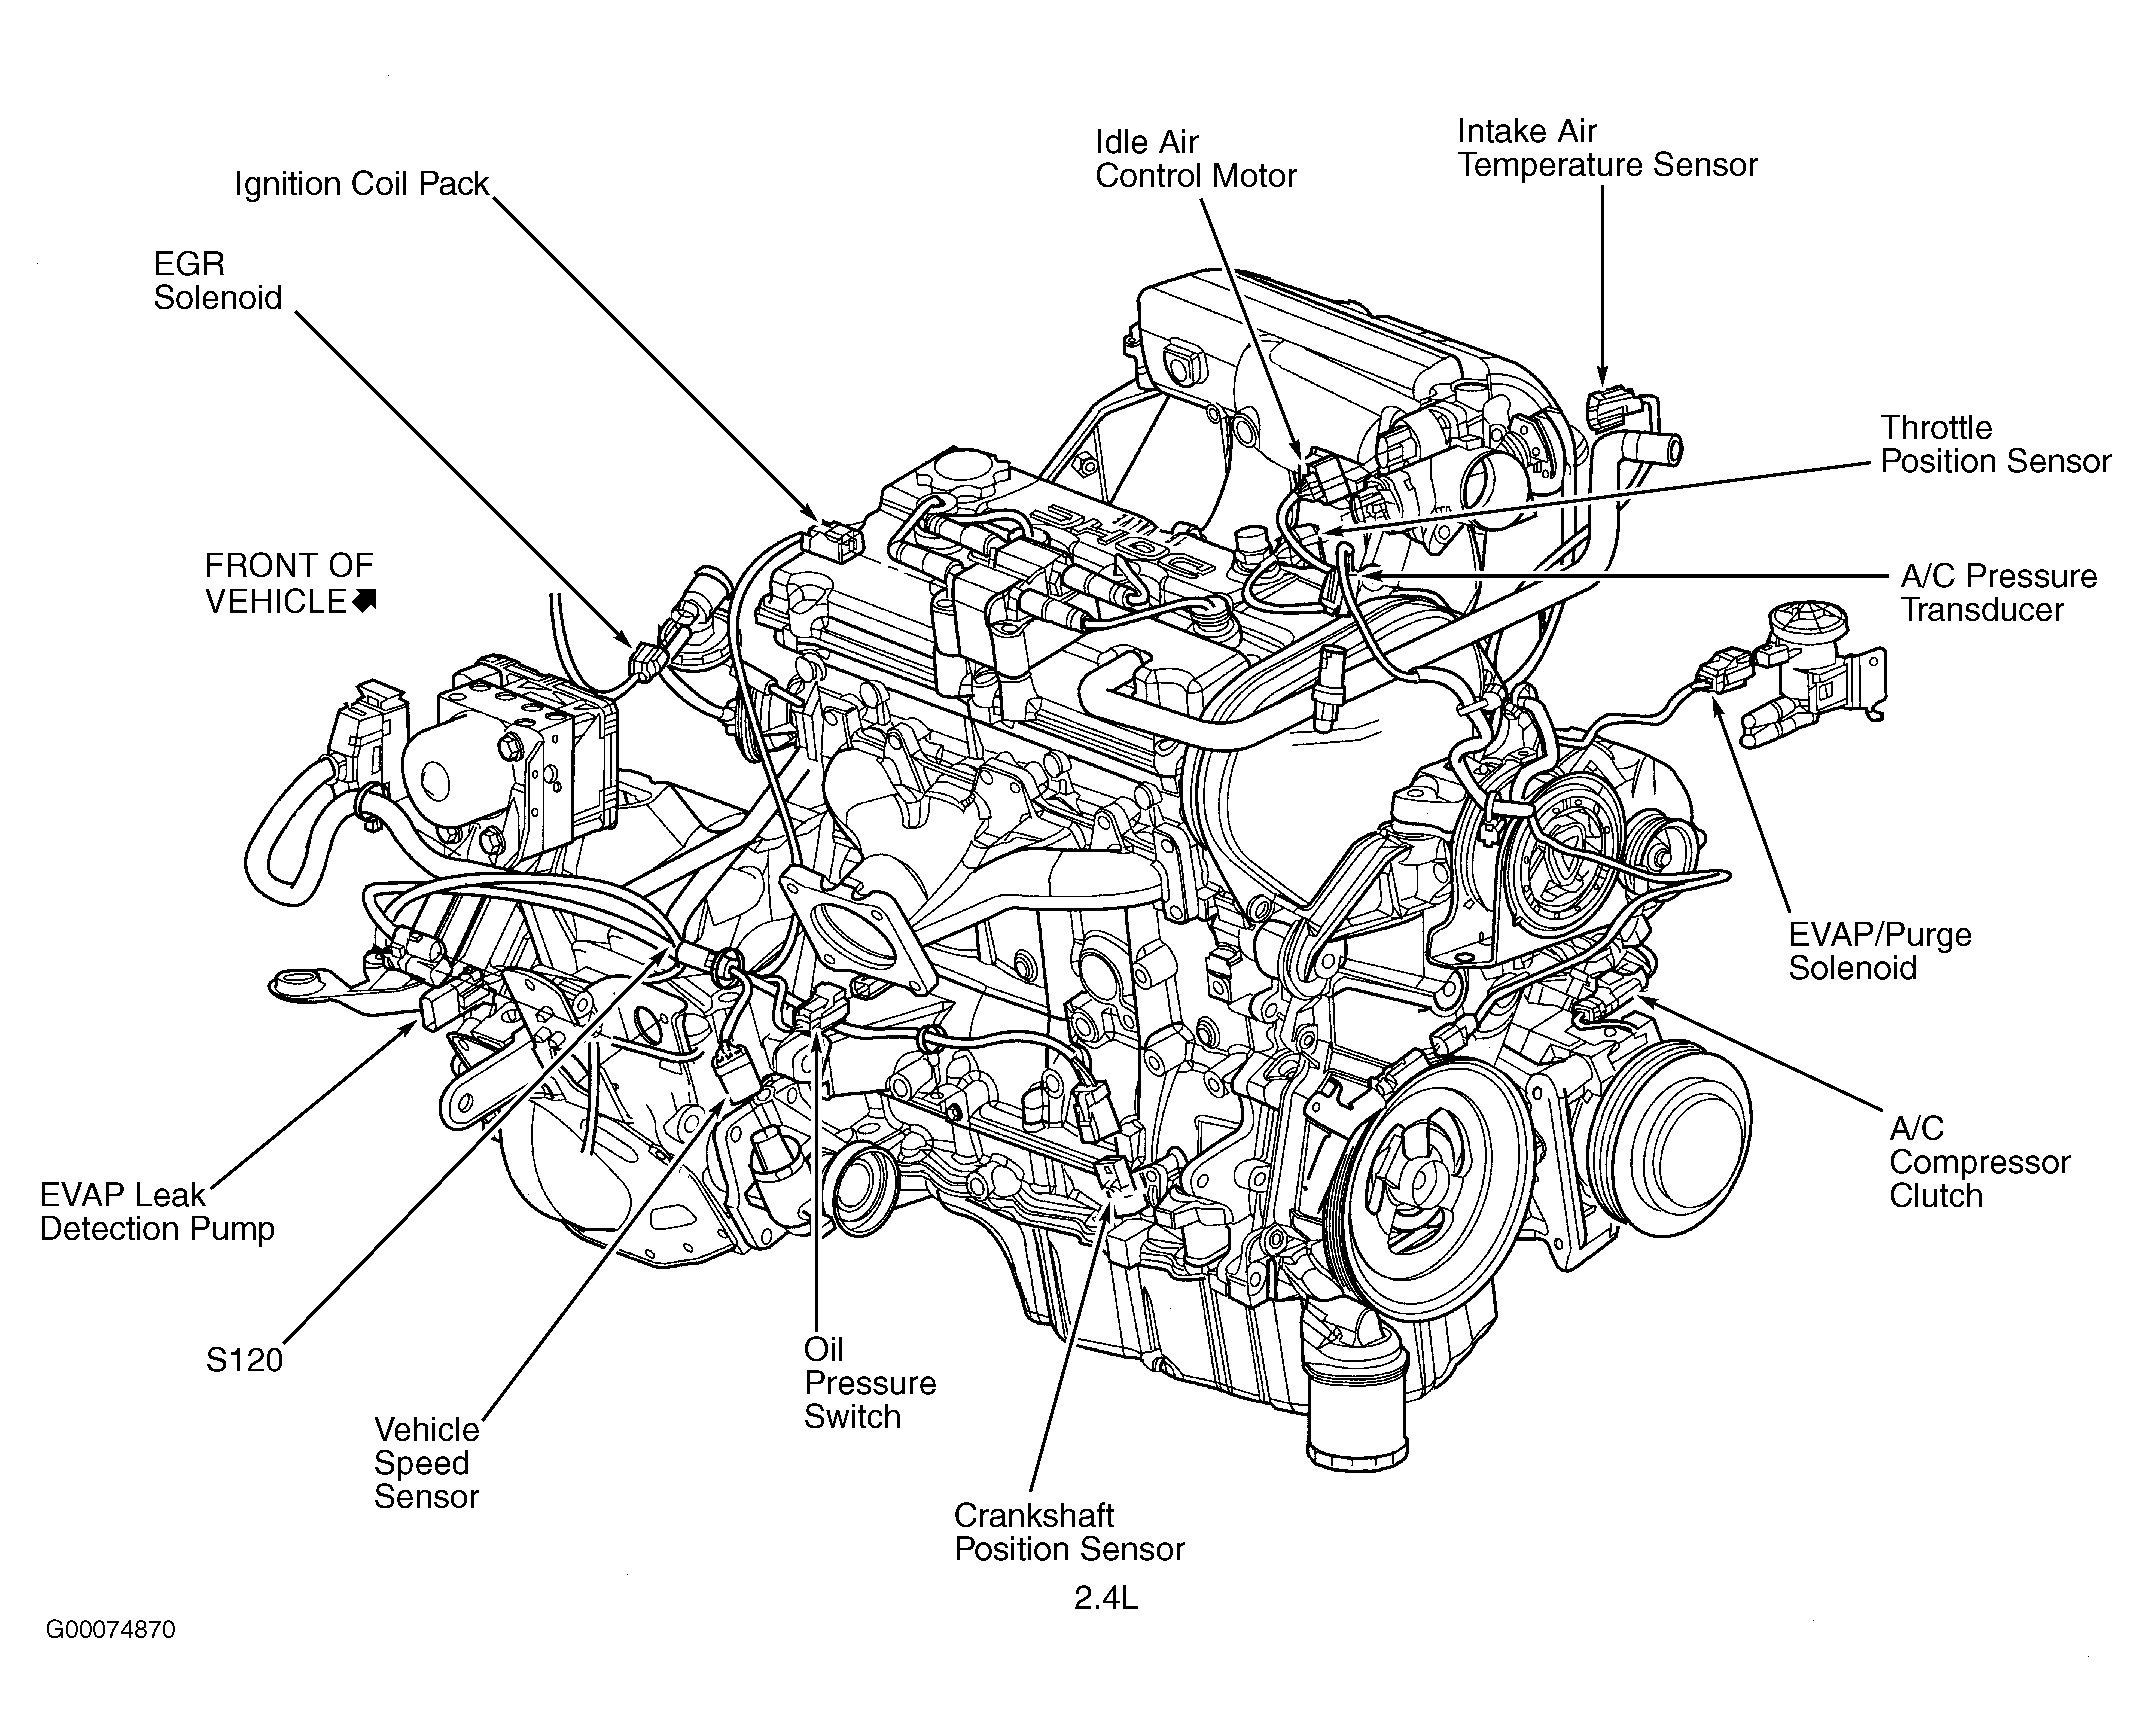 Dodge Grand Caravan ES 2002 - Component Locations -  Engine (2.4L)